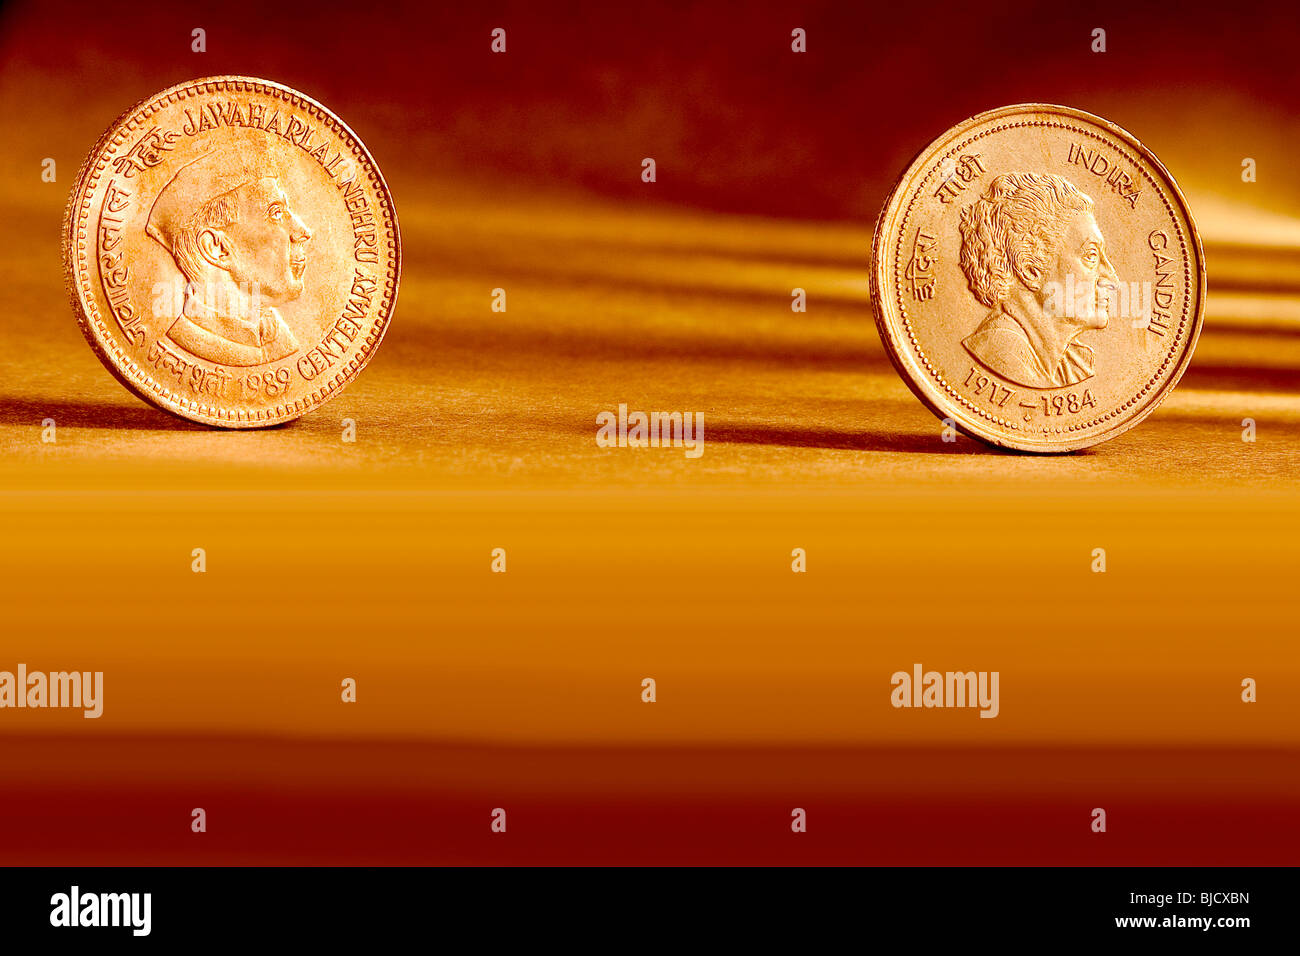 Doppeltes Paar indischer Währung fünf Rupien Münzen Jawaharlal Nehru Centenary 1989 & Indira Gandhi 1917-1984 auf orangem Hintergrund Stockfoto